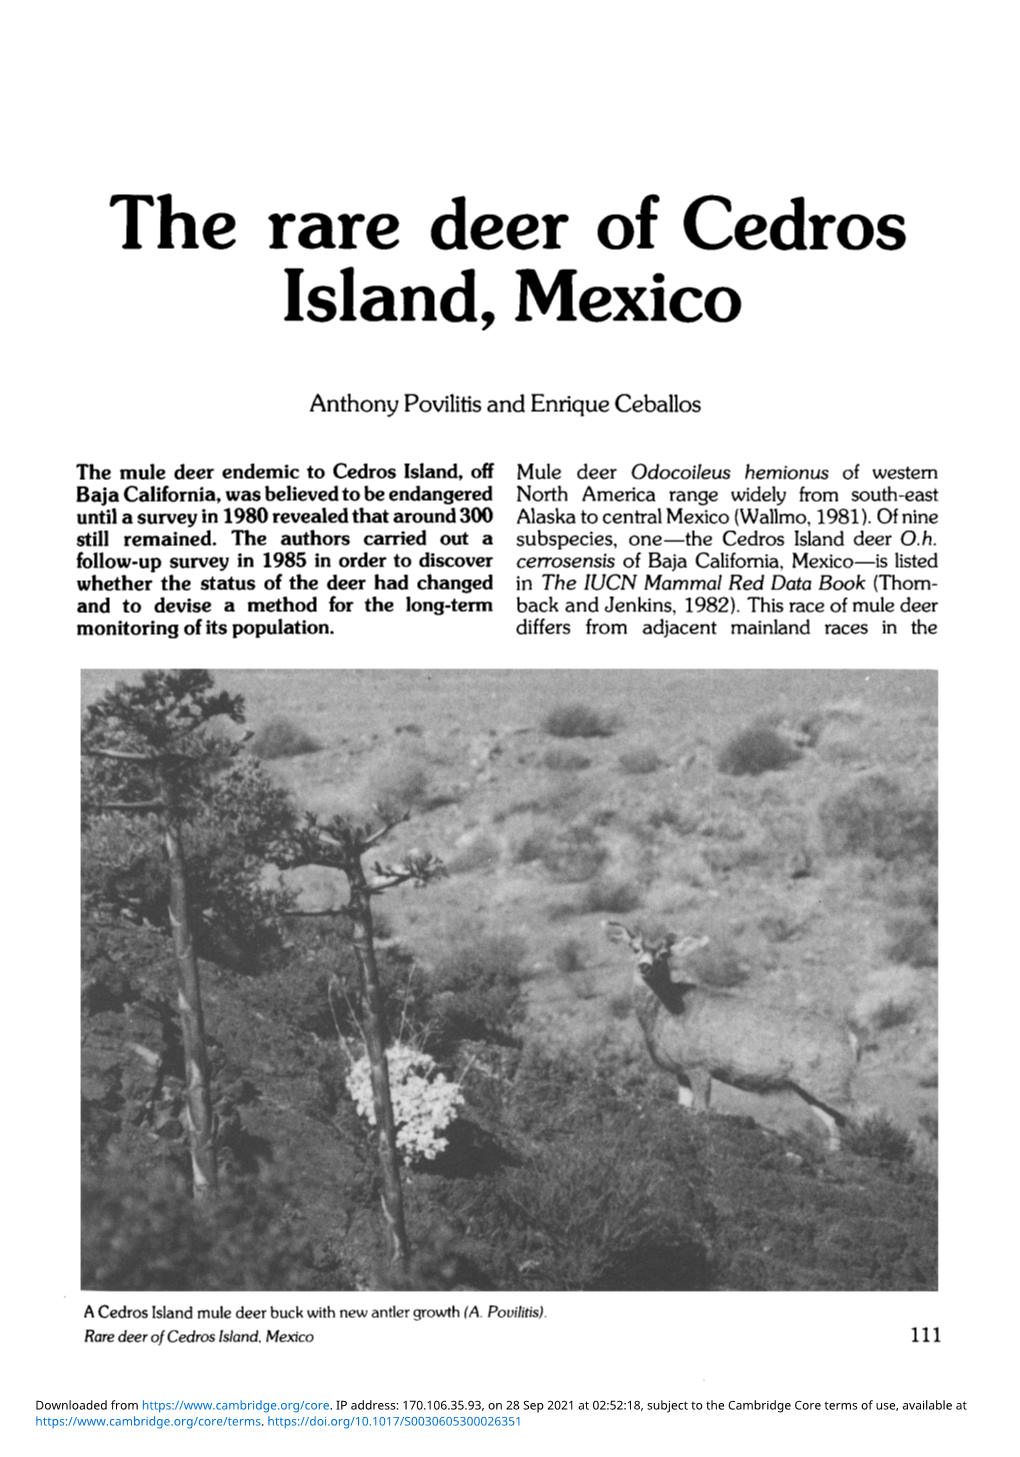 The Rare Deer of Cedros Island, Mexico